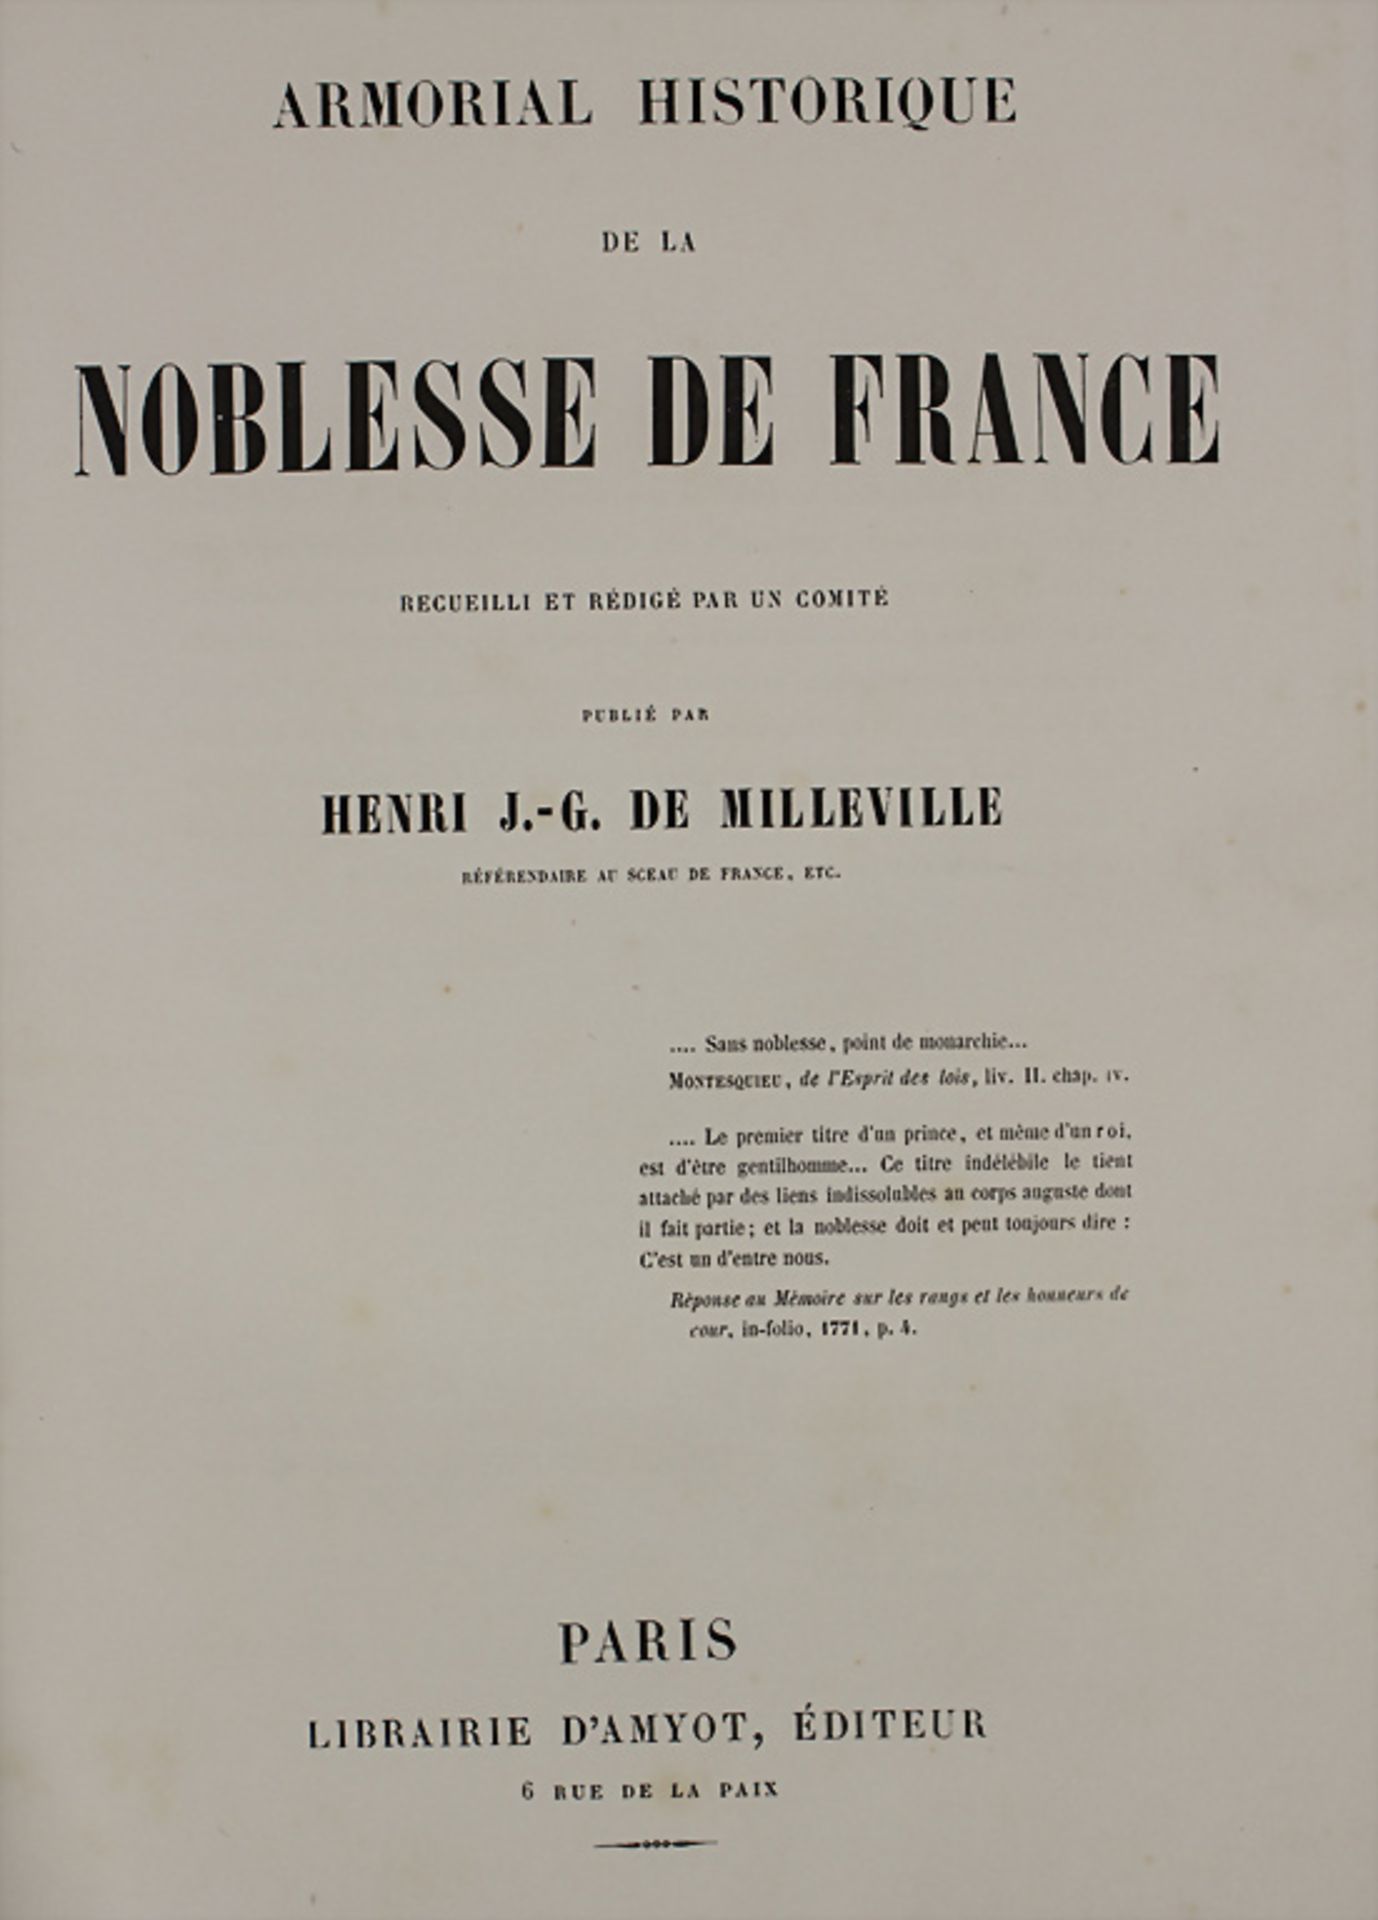 Heraldik, Henri J.-G de Milleville, 'Armorial historique de la Noblesse de France' Paris 1846